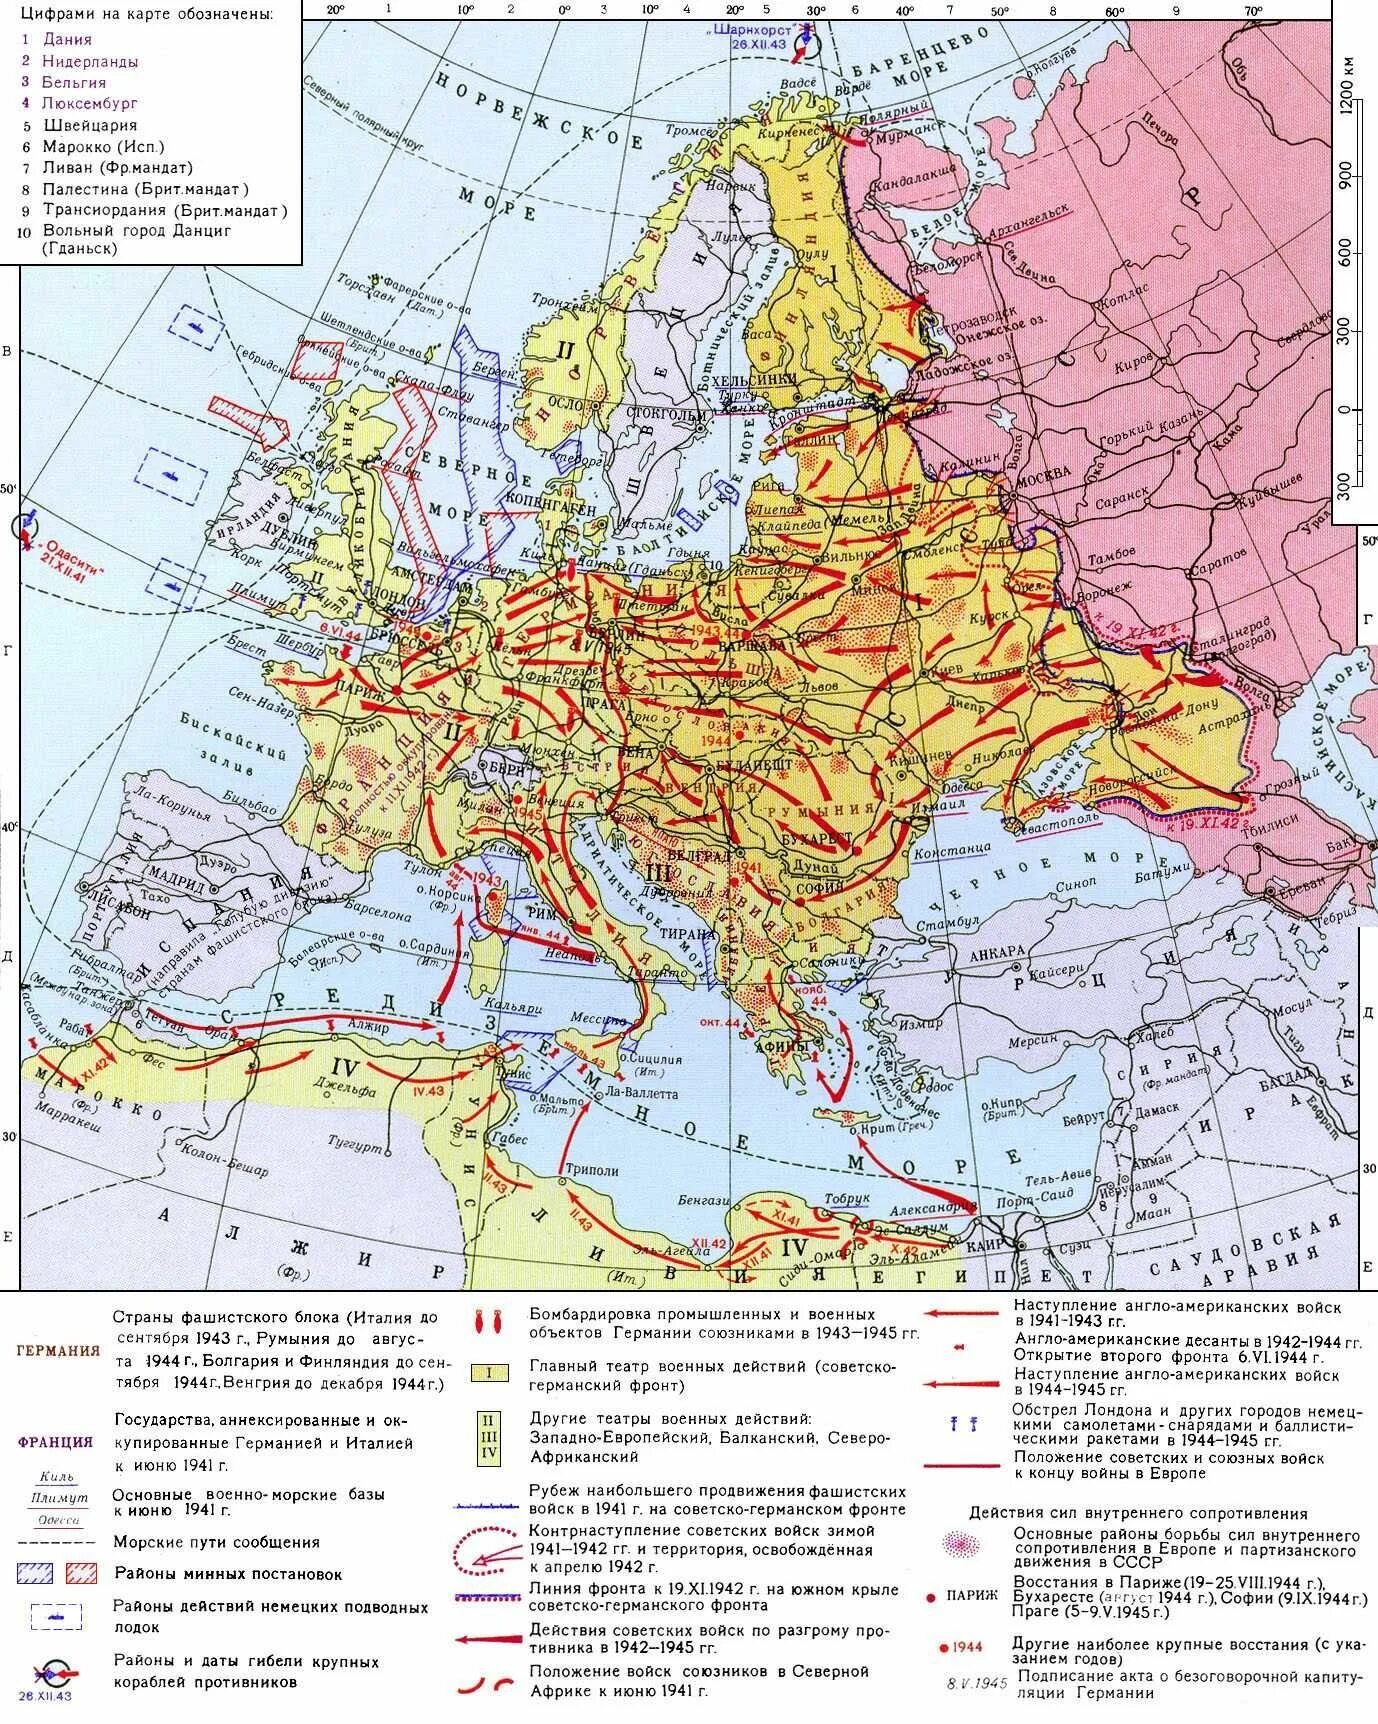 Блок фашистских государств. Карта второй мировой войны 1939-1945. Карта второй мировой войны 1942-1945.